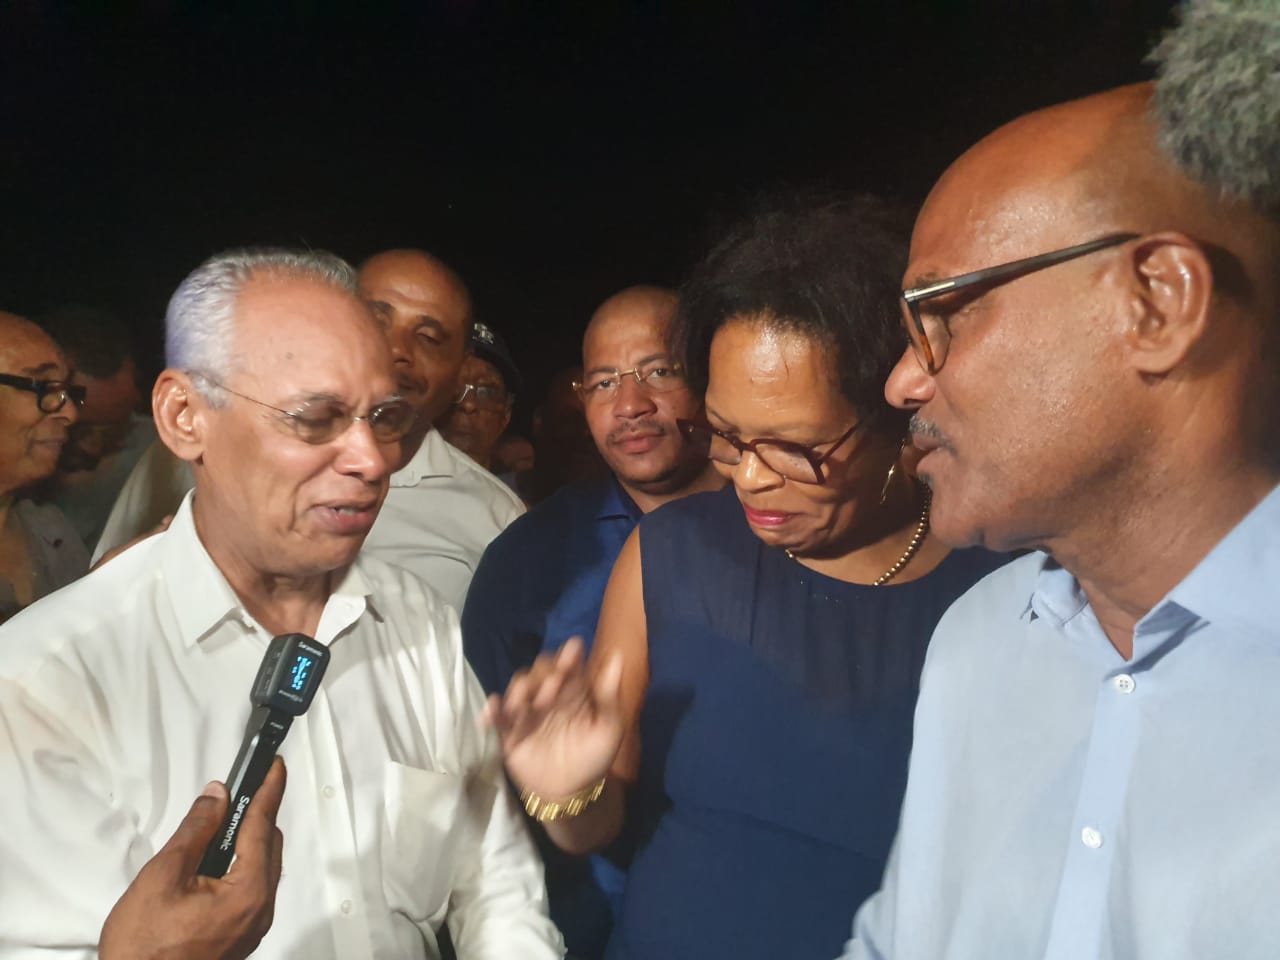     [DIRECT] Dominique Théophile, Solanges Nadille et Victorin Lurel sont les nouveaux sénateurs de la Guadeloupe

